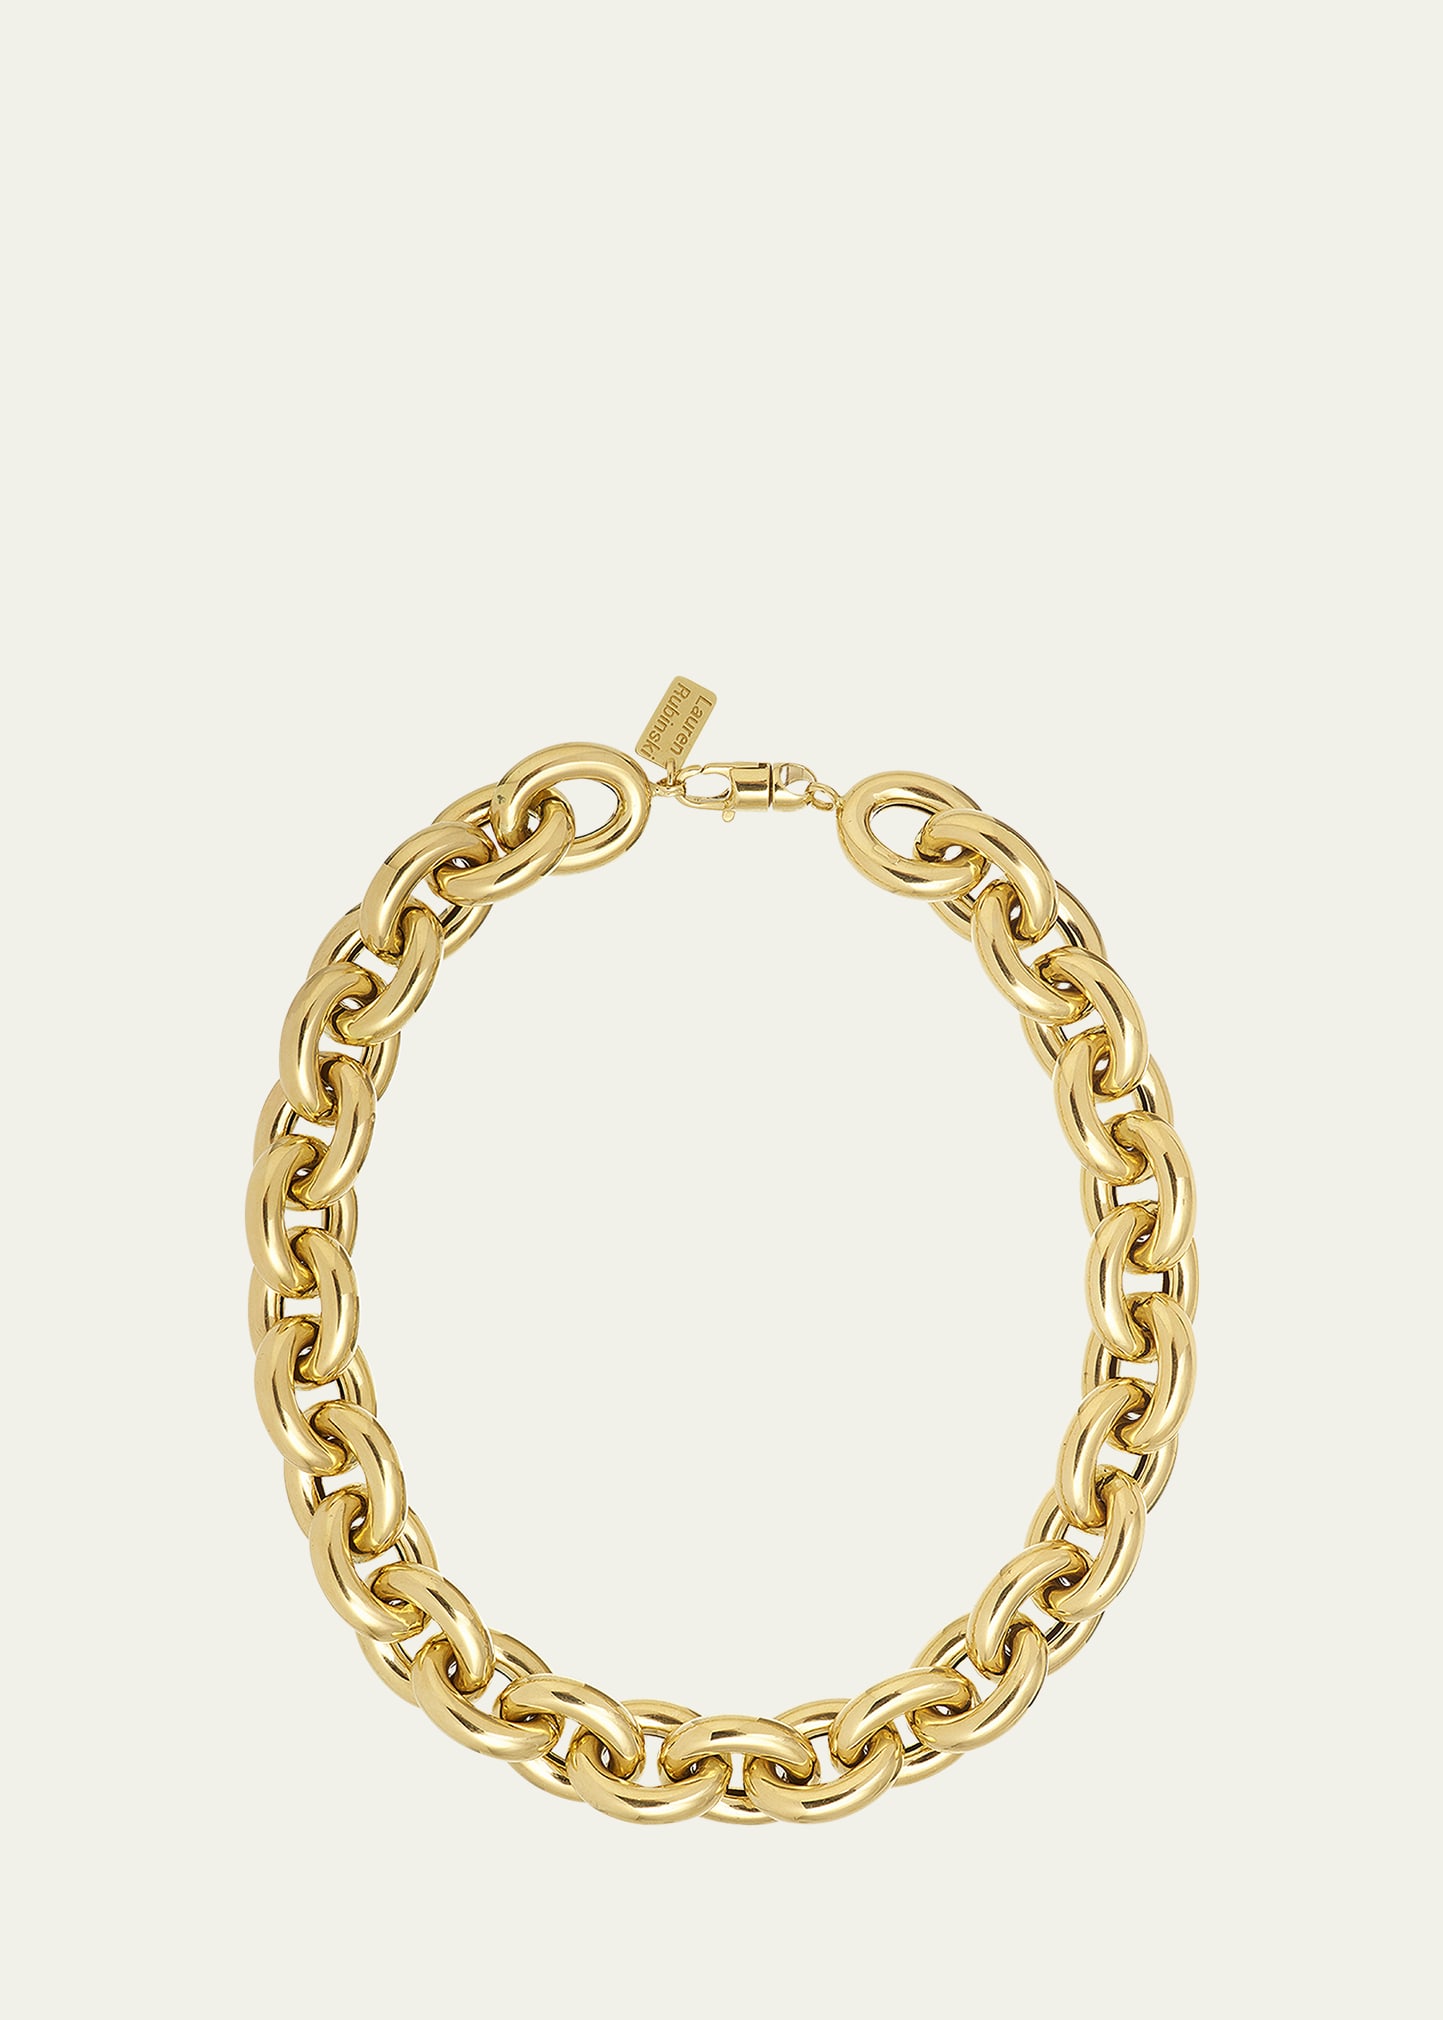 Lauren Rubinski Lr7 XL Round Link Short Necklace in 14K Yellow Gold with Extender